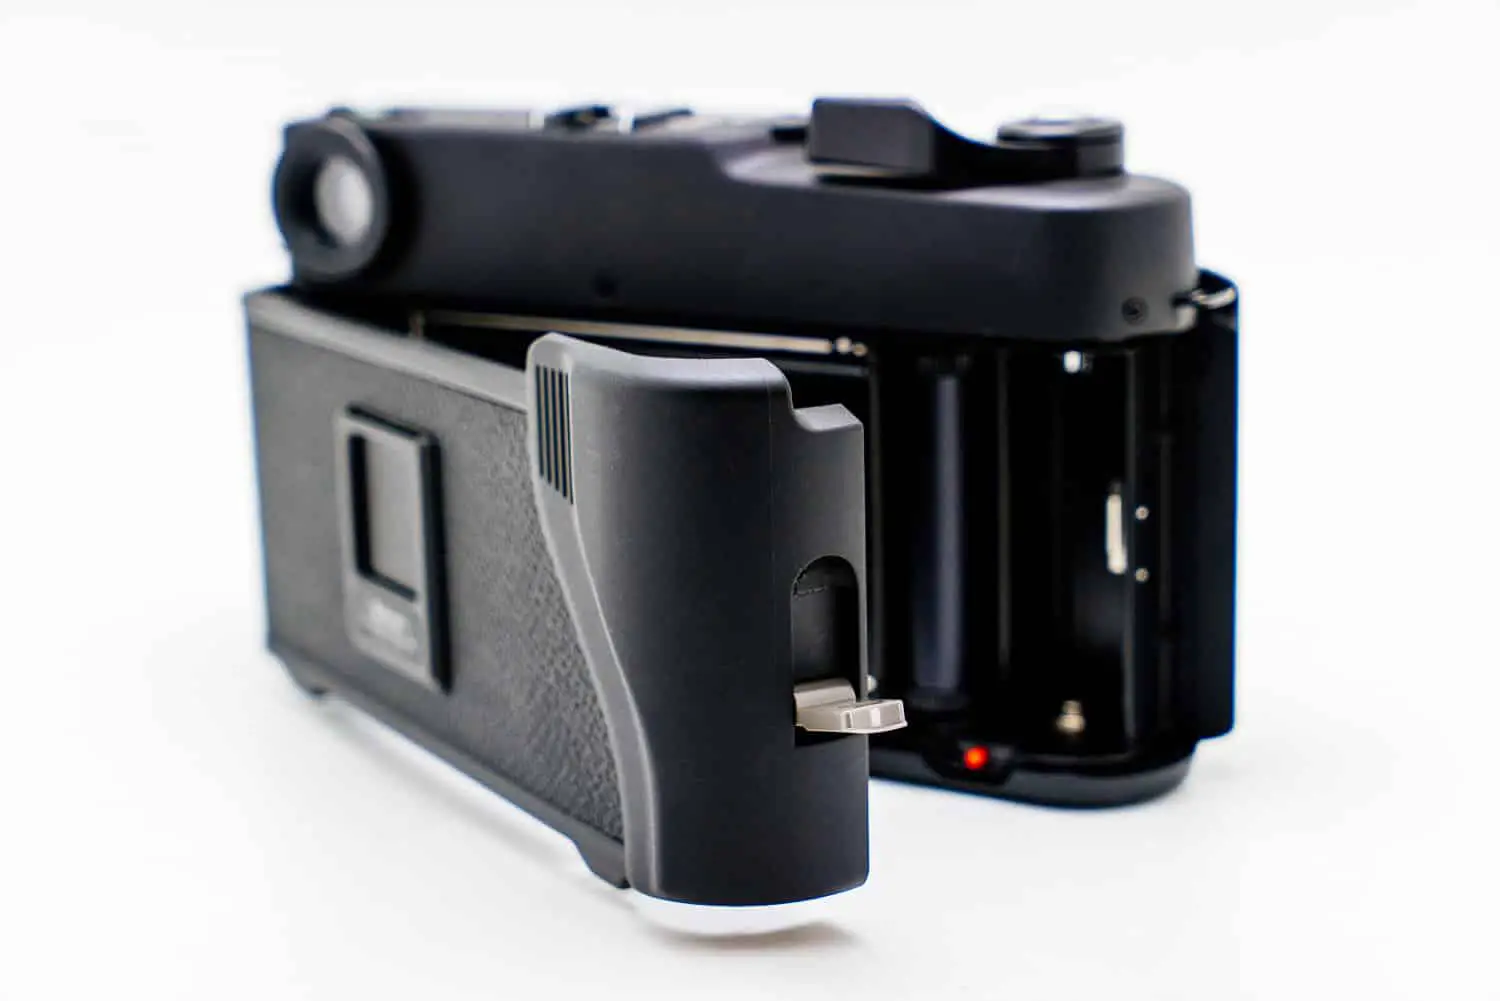 FUJI Service Manual GW690-III GSW690-III film camera SERVICE MANUAL on CD 